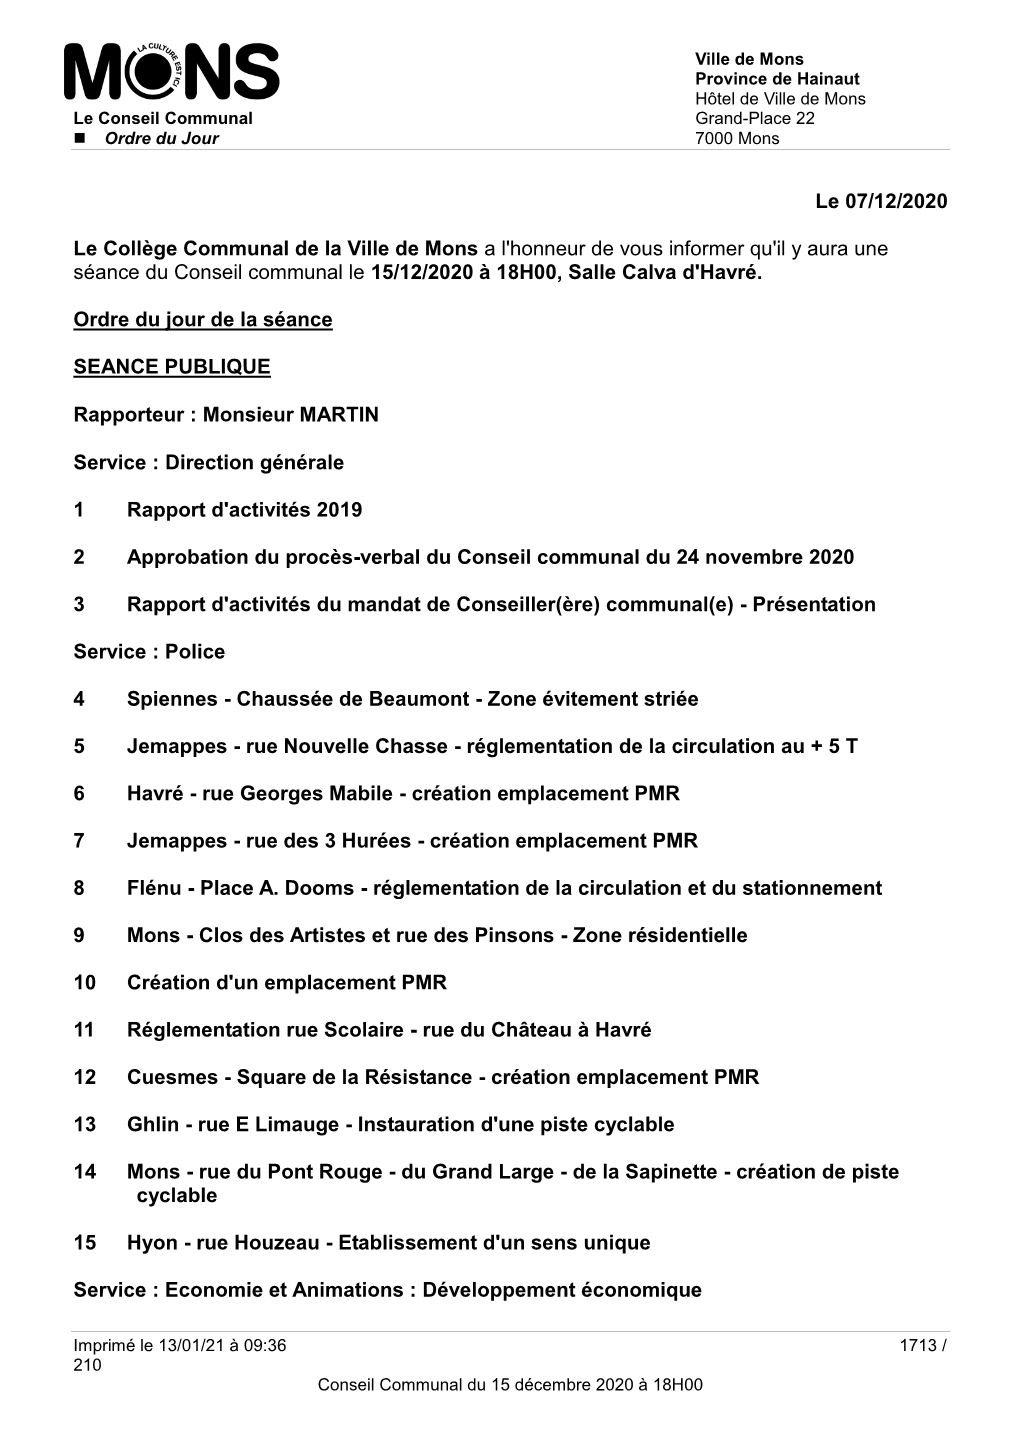 Le 07/12/2020 Le Collège Communal De La Ville De Mons a L'honneur De